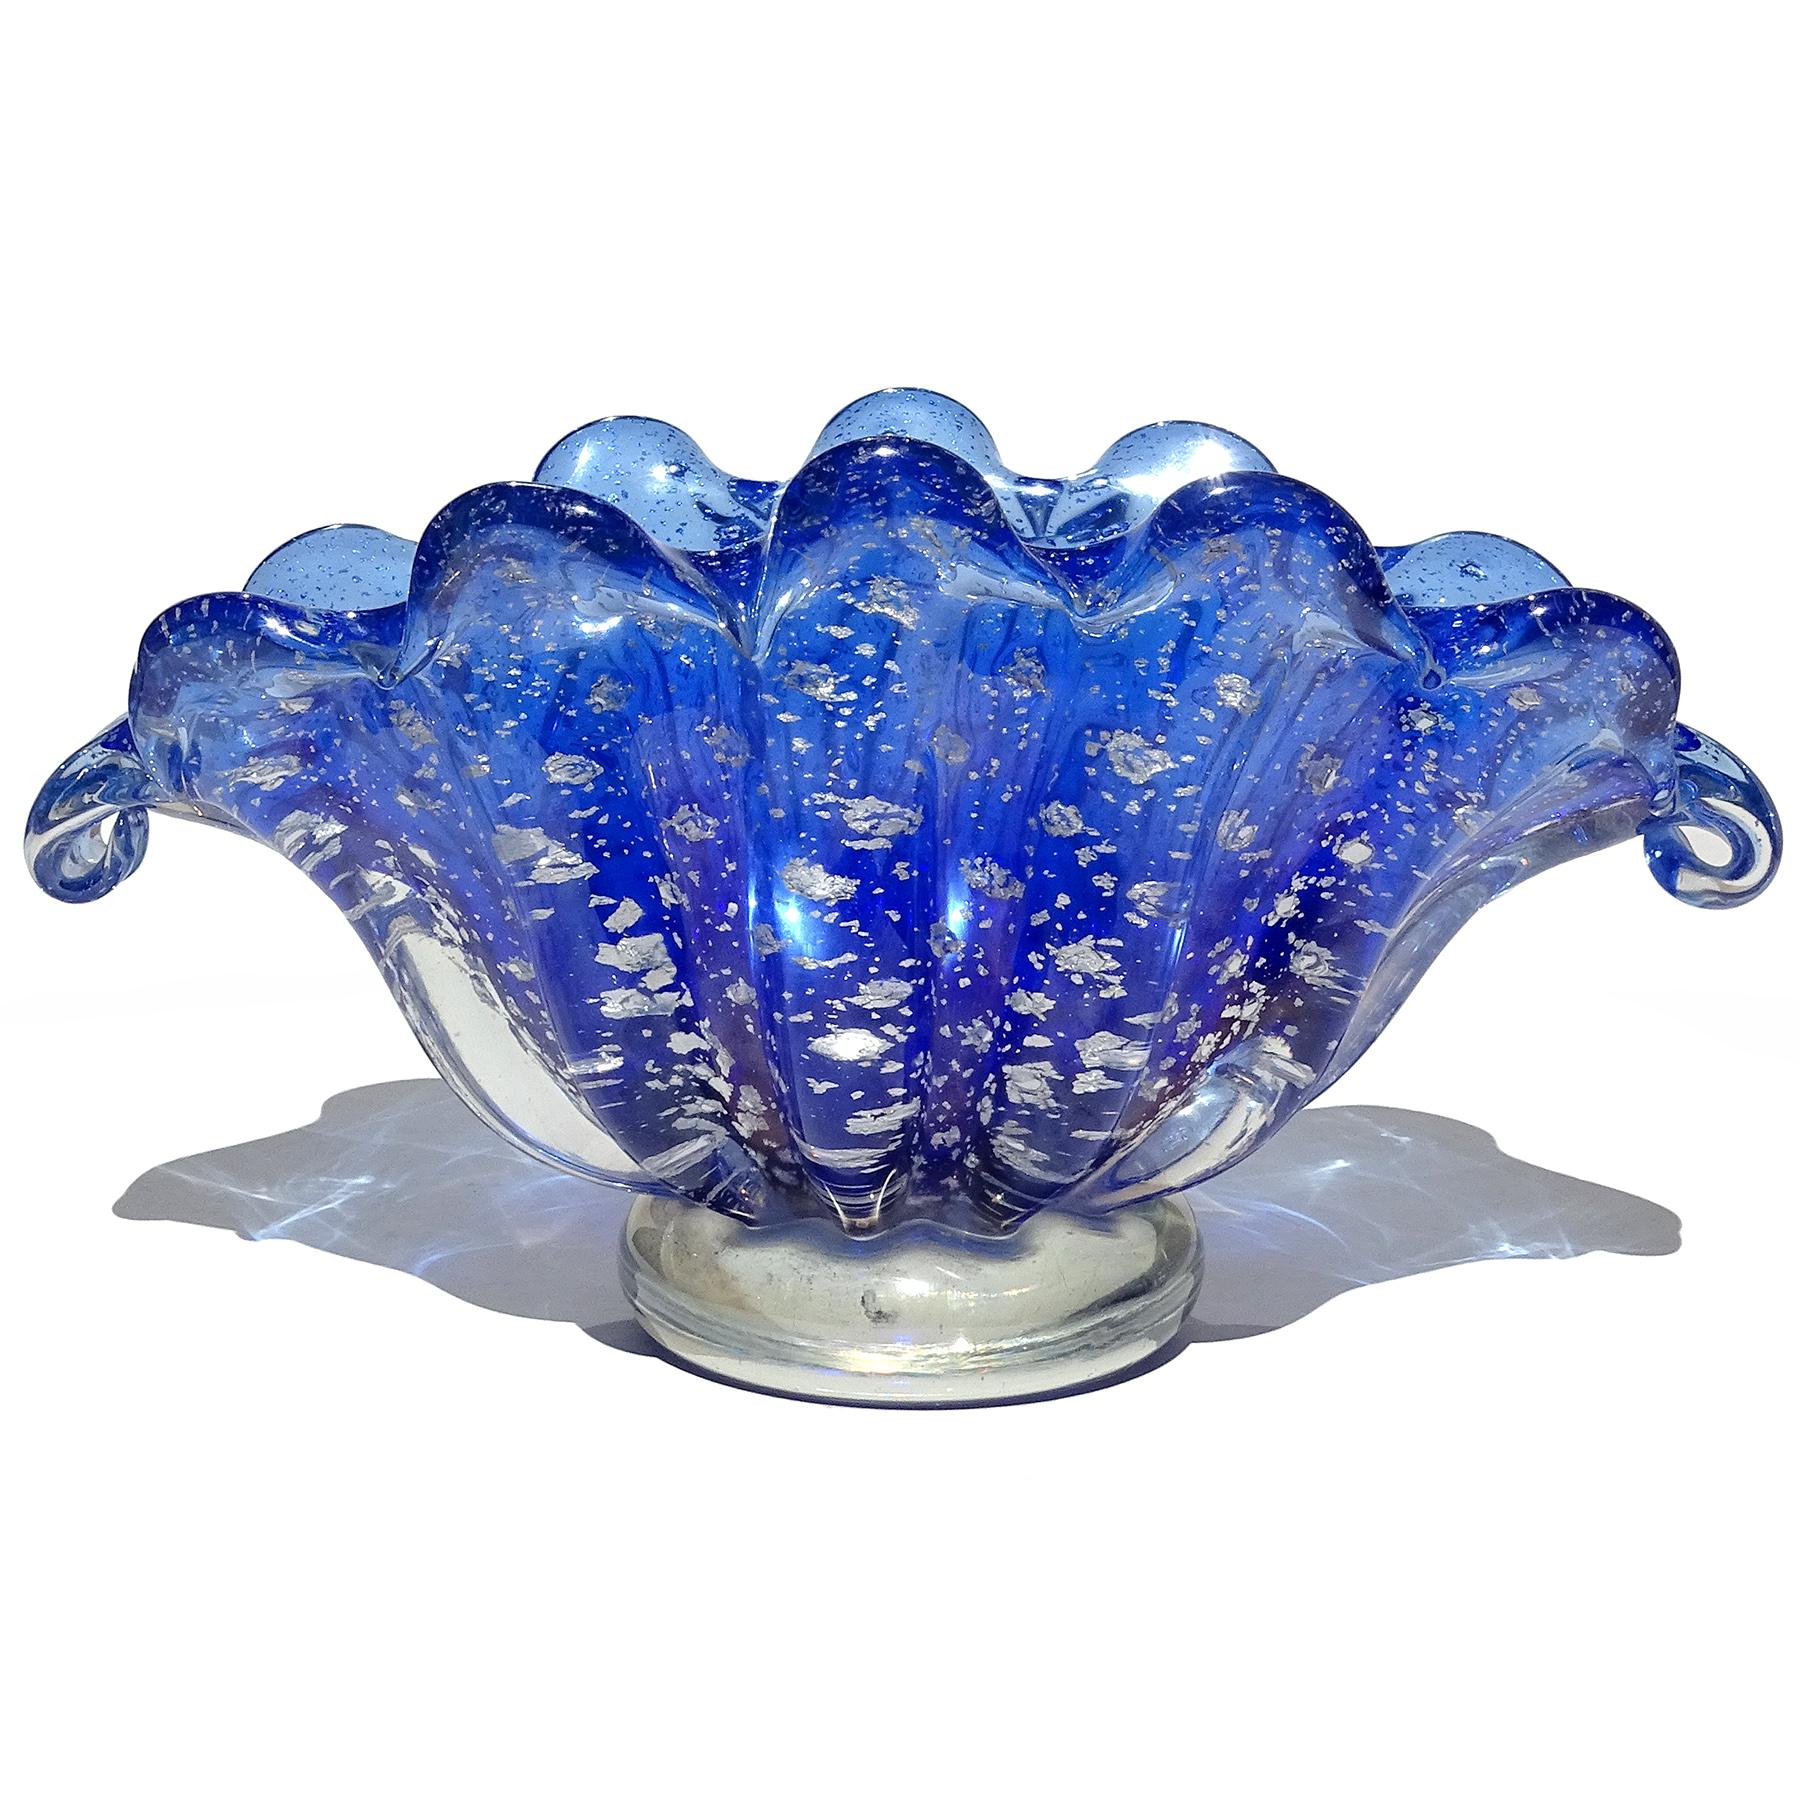 Schöne Vintage Murano mundgeblasen kobaltblau, Silber Flecken, kontrolliert Blasen italienische Kunst Glasschale oder Vase. Wird der Firma Barovier e Toso zugeschrieben. Das Stück hat die Form einer Muschelschale mit Muschelrand und einem